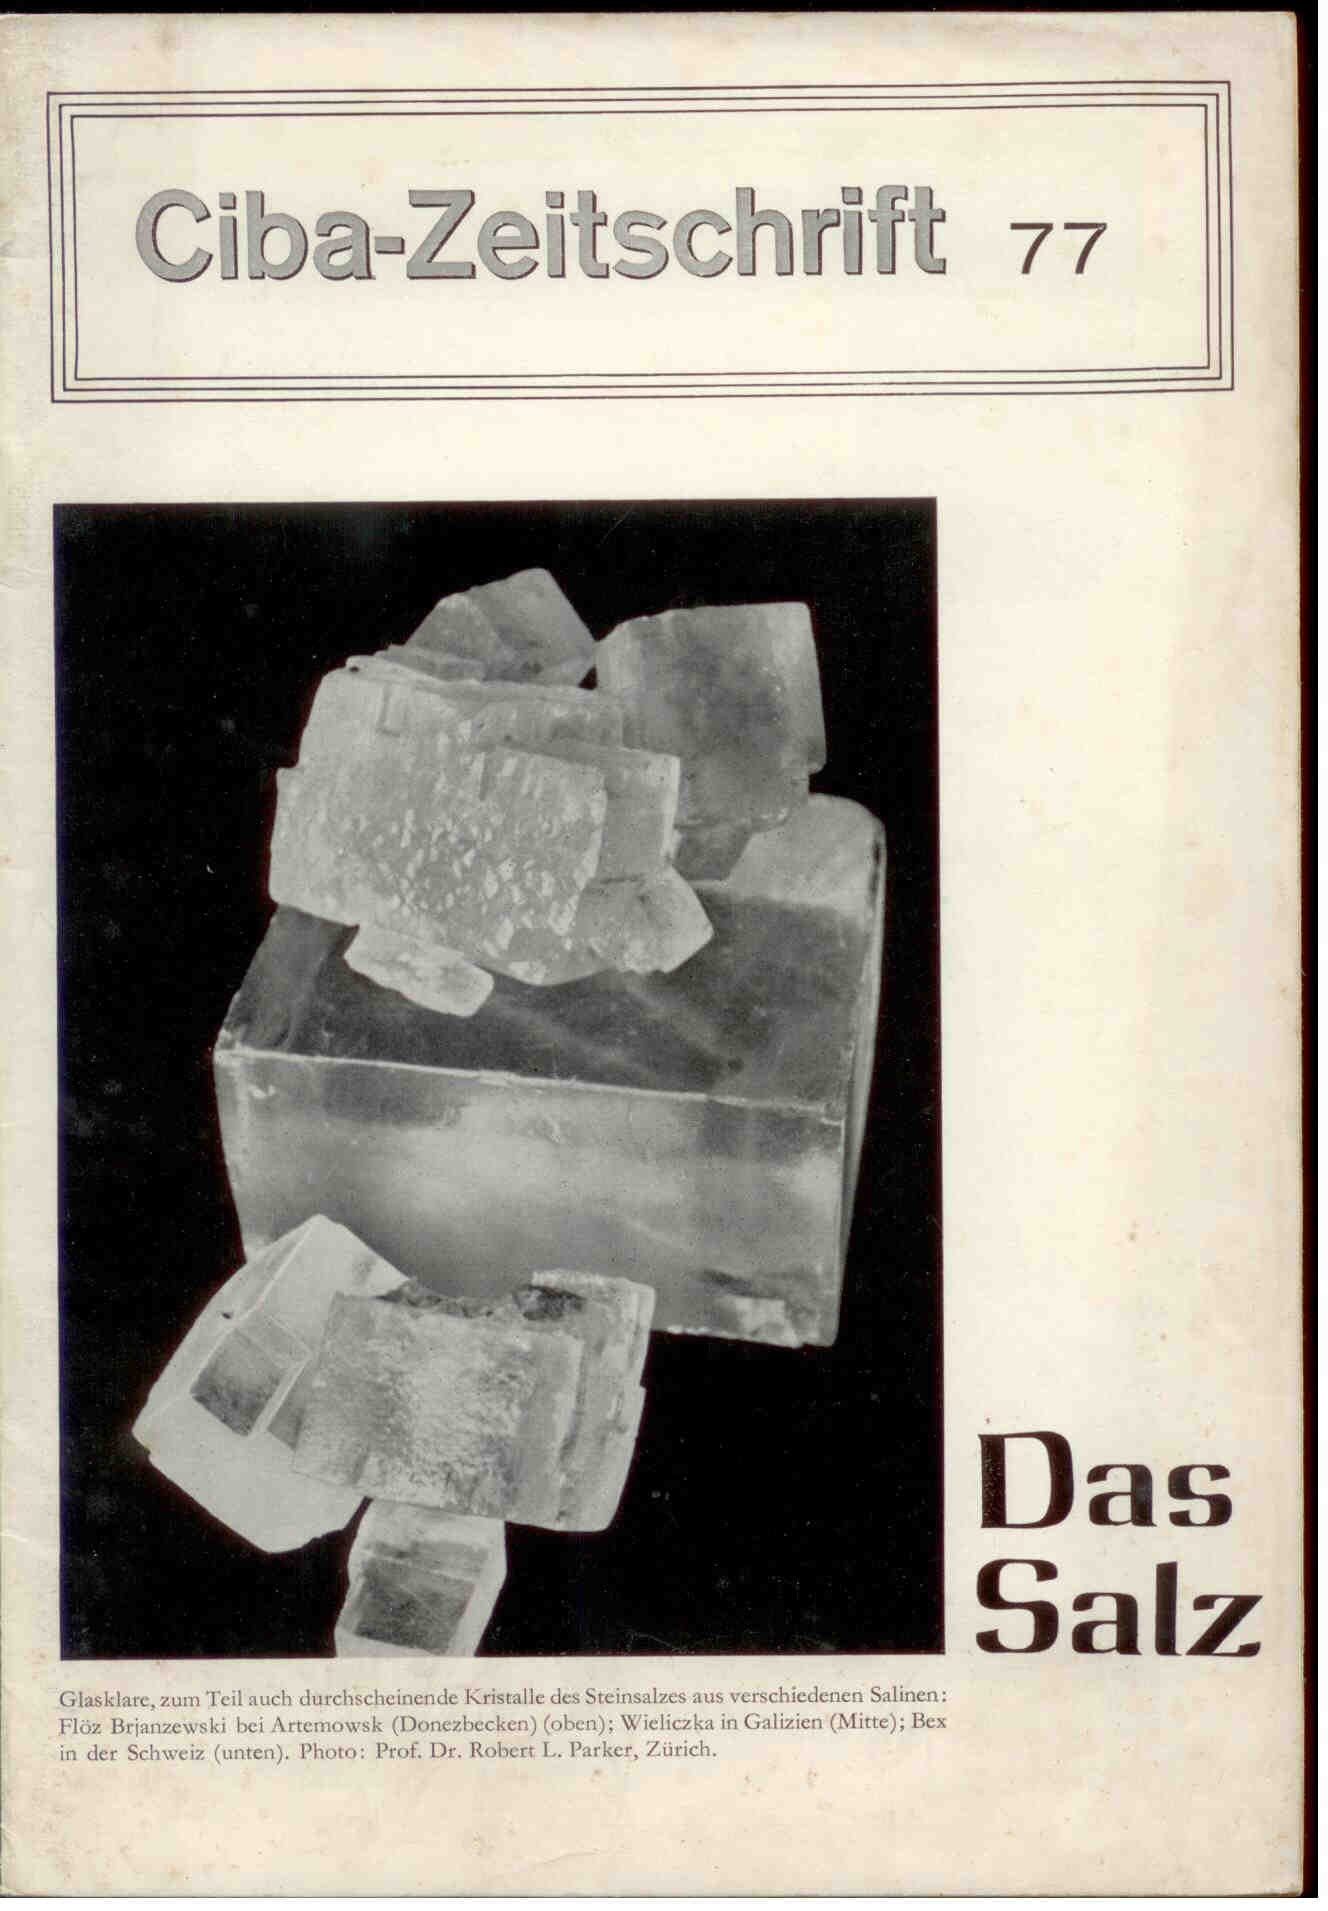 Schroeter, J. Burri, C. Quervain, F.: Das Salz. Ciba Zeitschrift Nr. 77